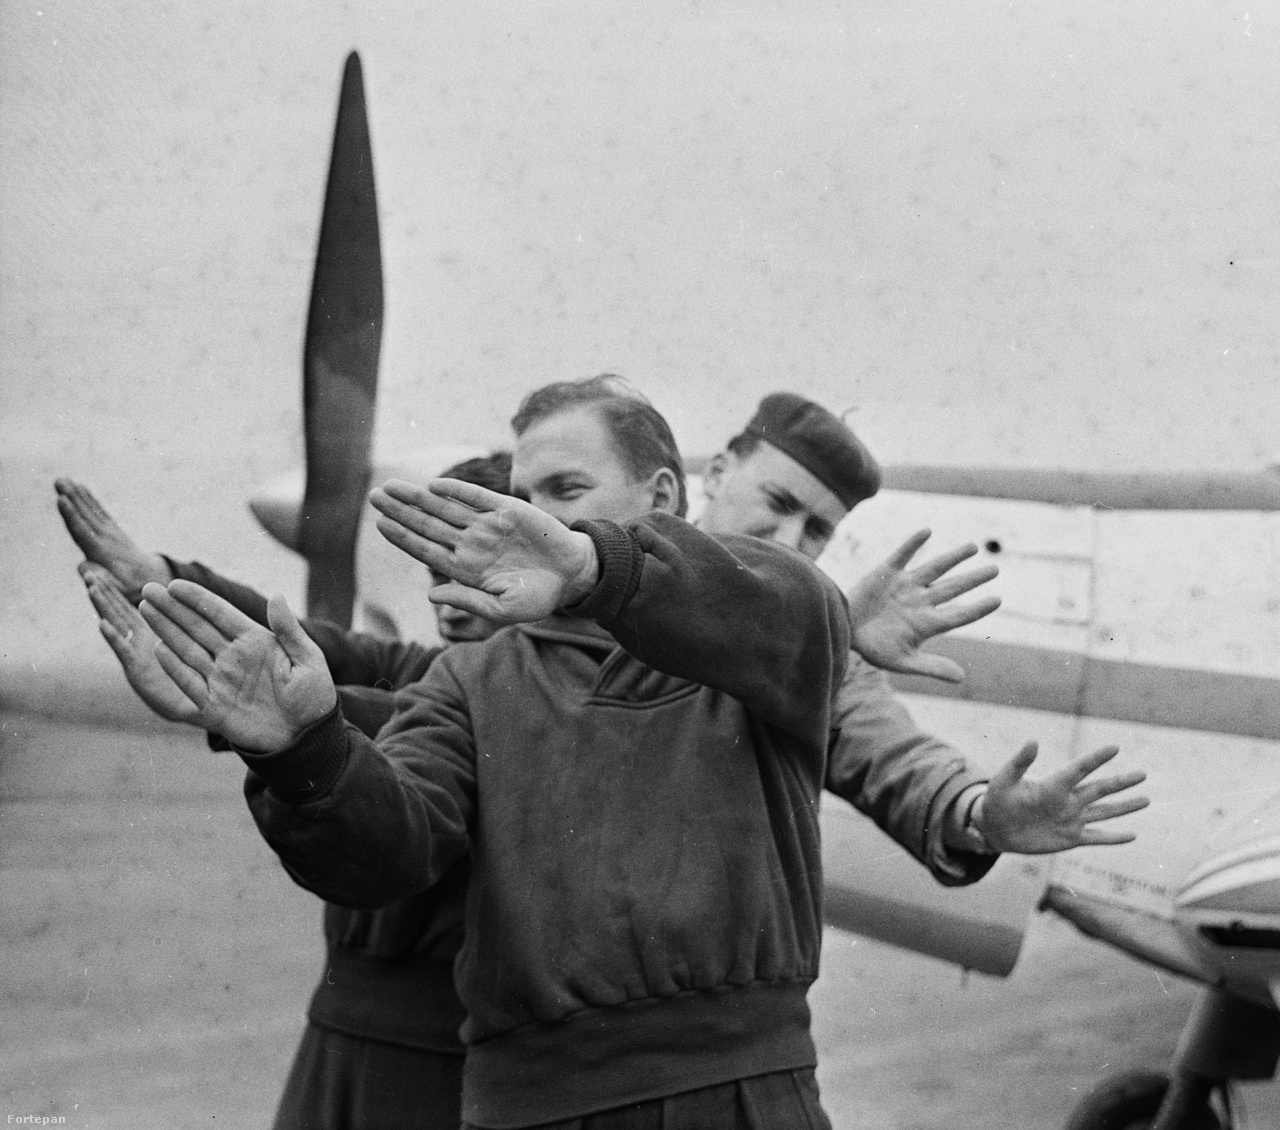 1966. Műrepülők a földön gyakorolják a repülés elemeit. A háttérben egy Zlin Trener típusú repülőgép.